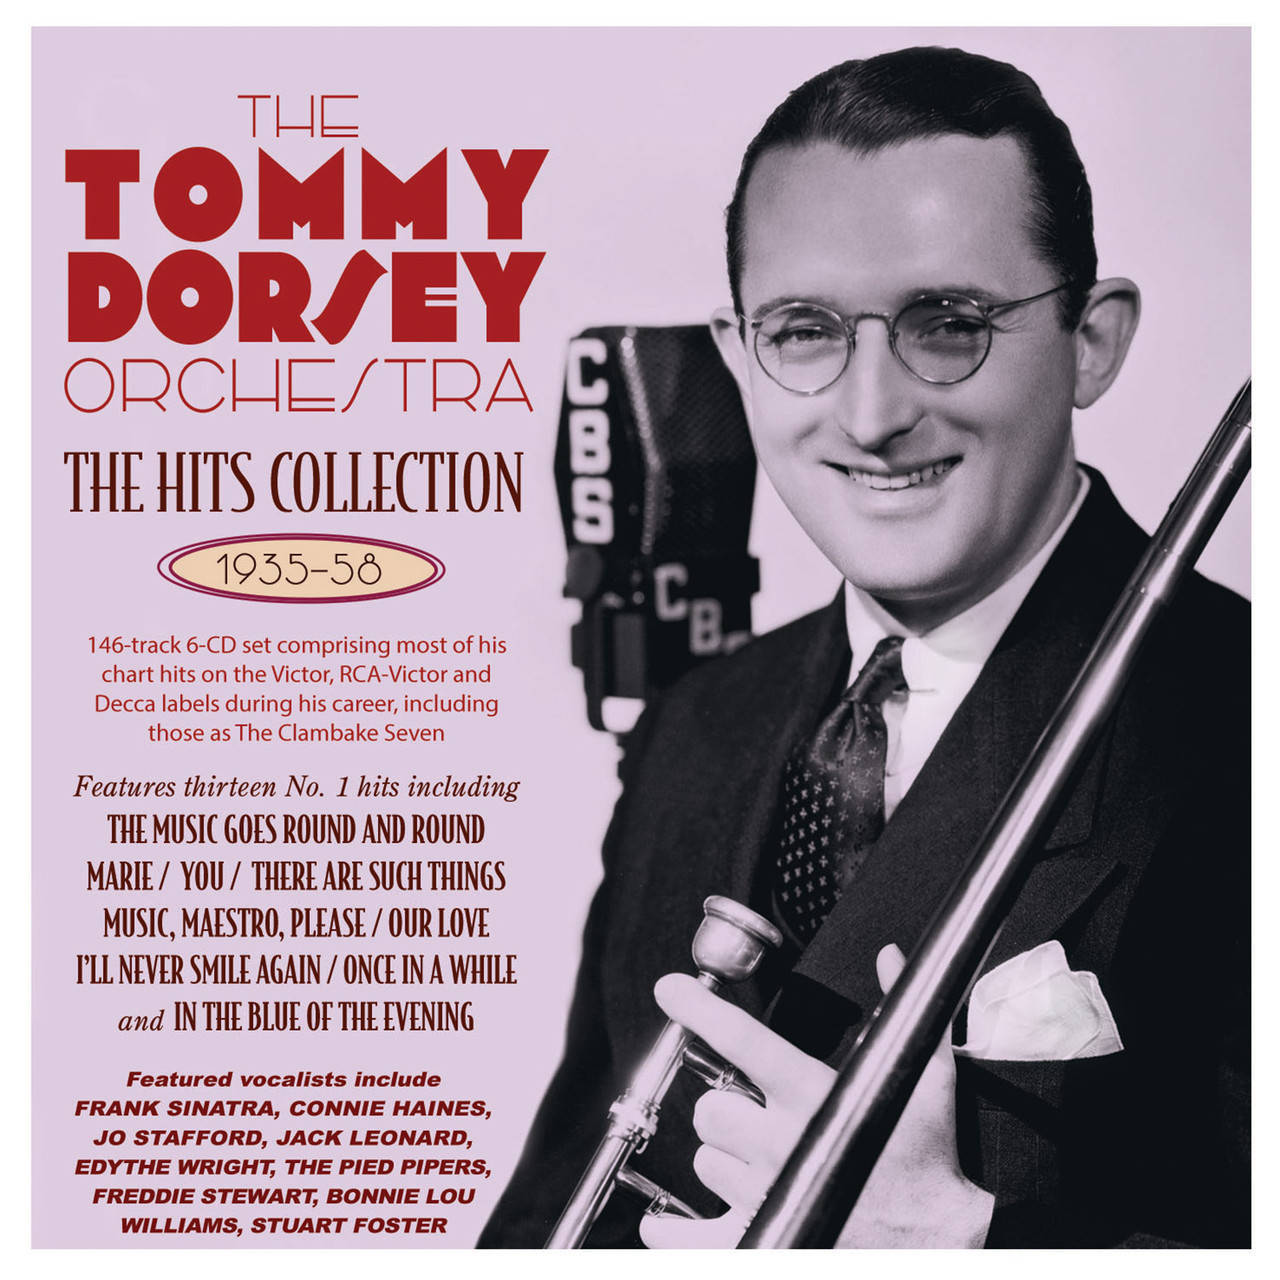 Tommydorsey Und Seine Orchester-sammlung Cover-kunst Wallpaper